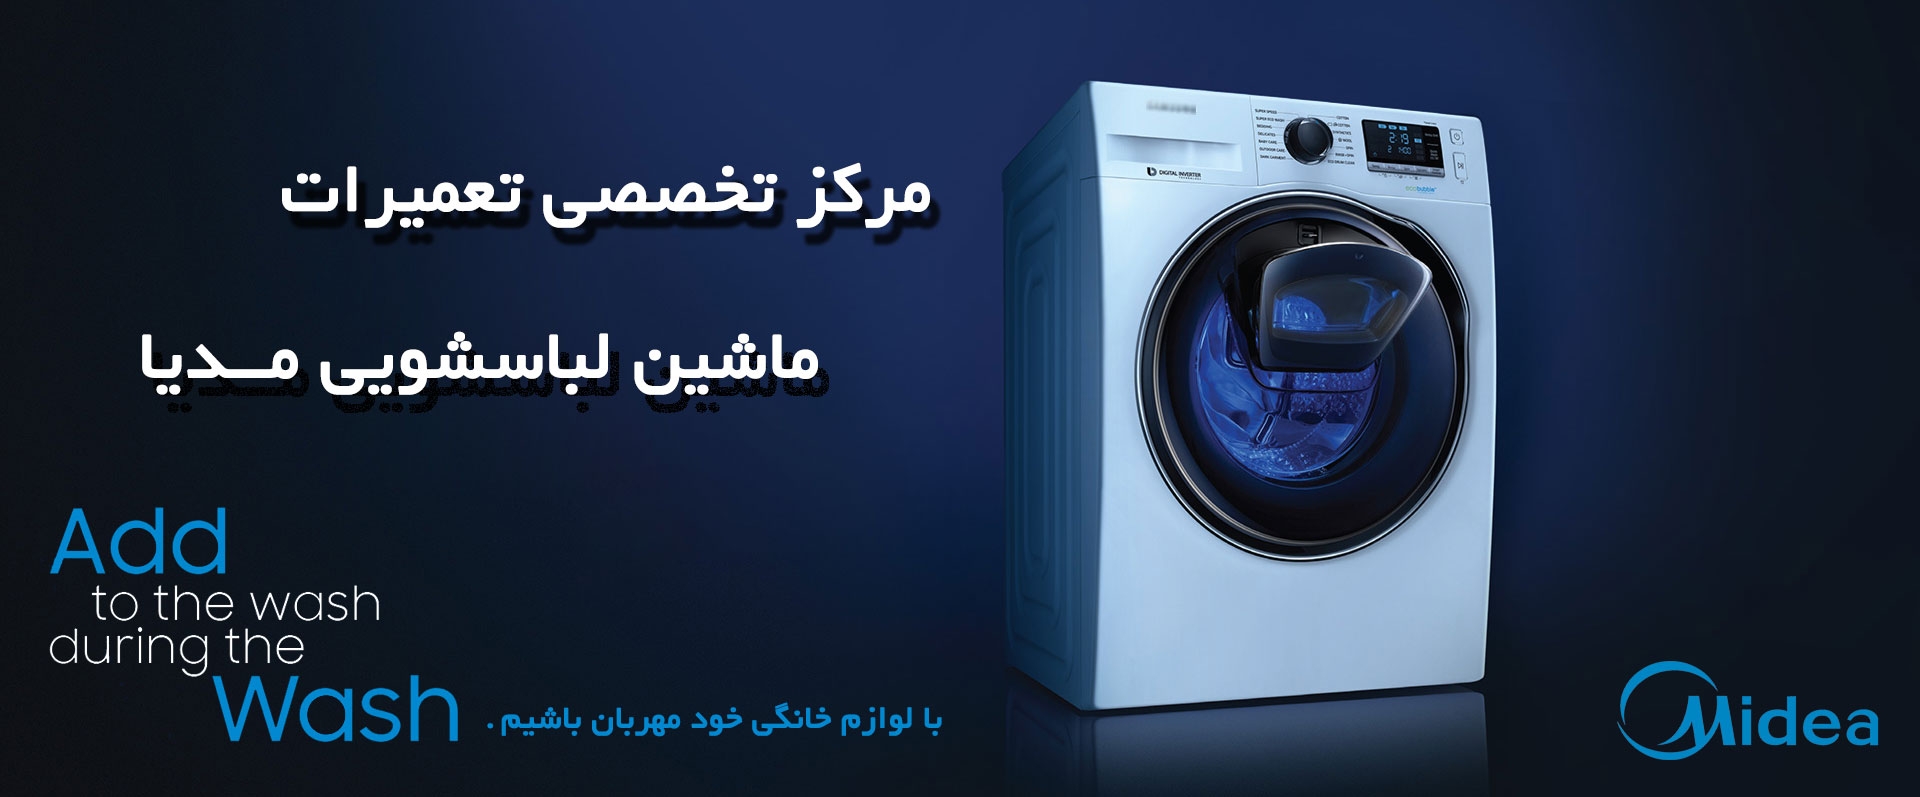 تعمیر ماشین لباسشویی میدیا - MIDEA